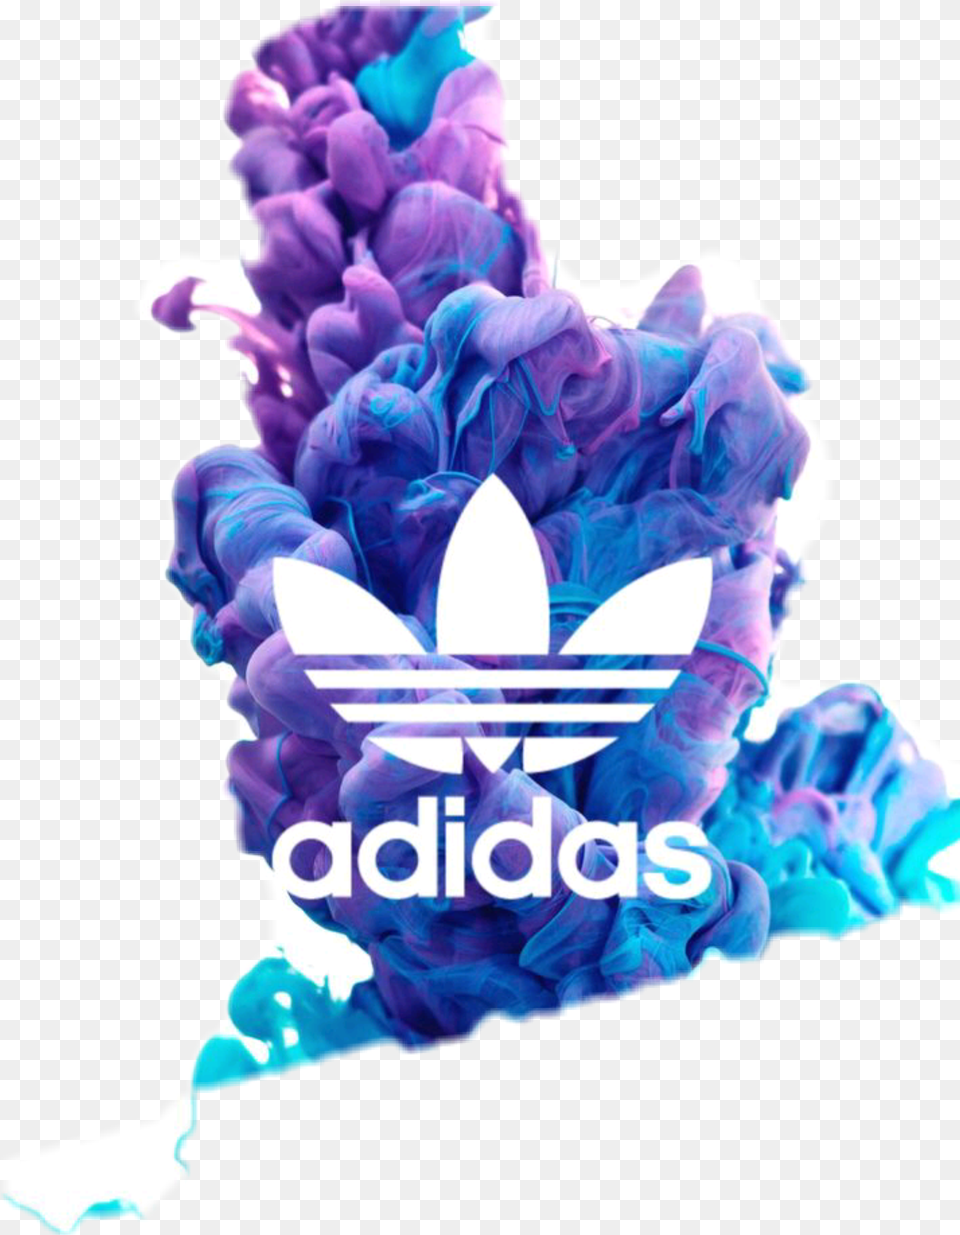 Addidas Logo Adidas Logo Galaxy, Flower, Plant, Ice, Baby Free Png